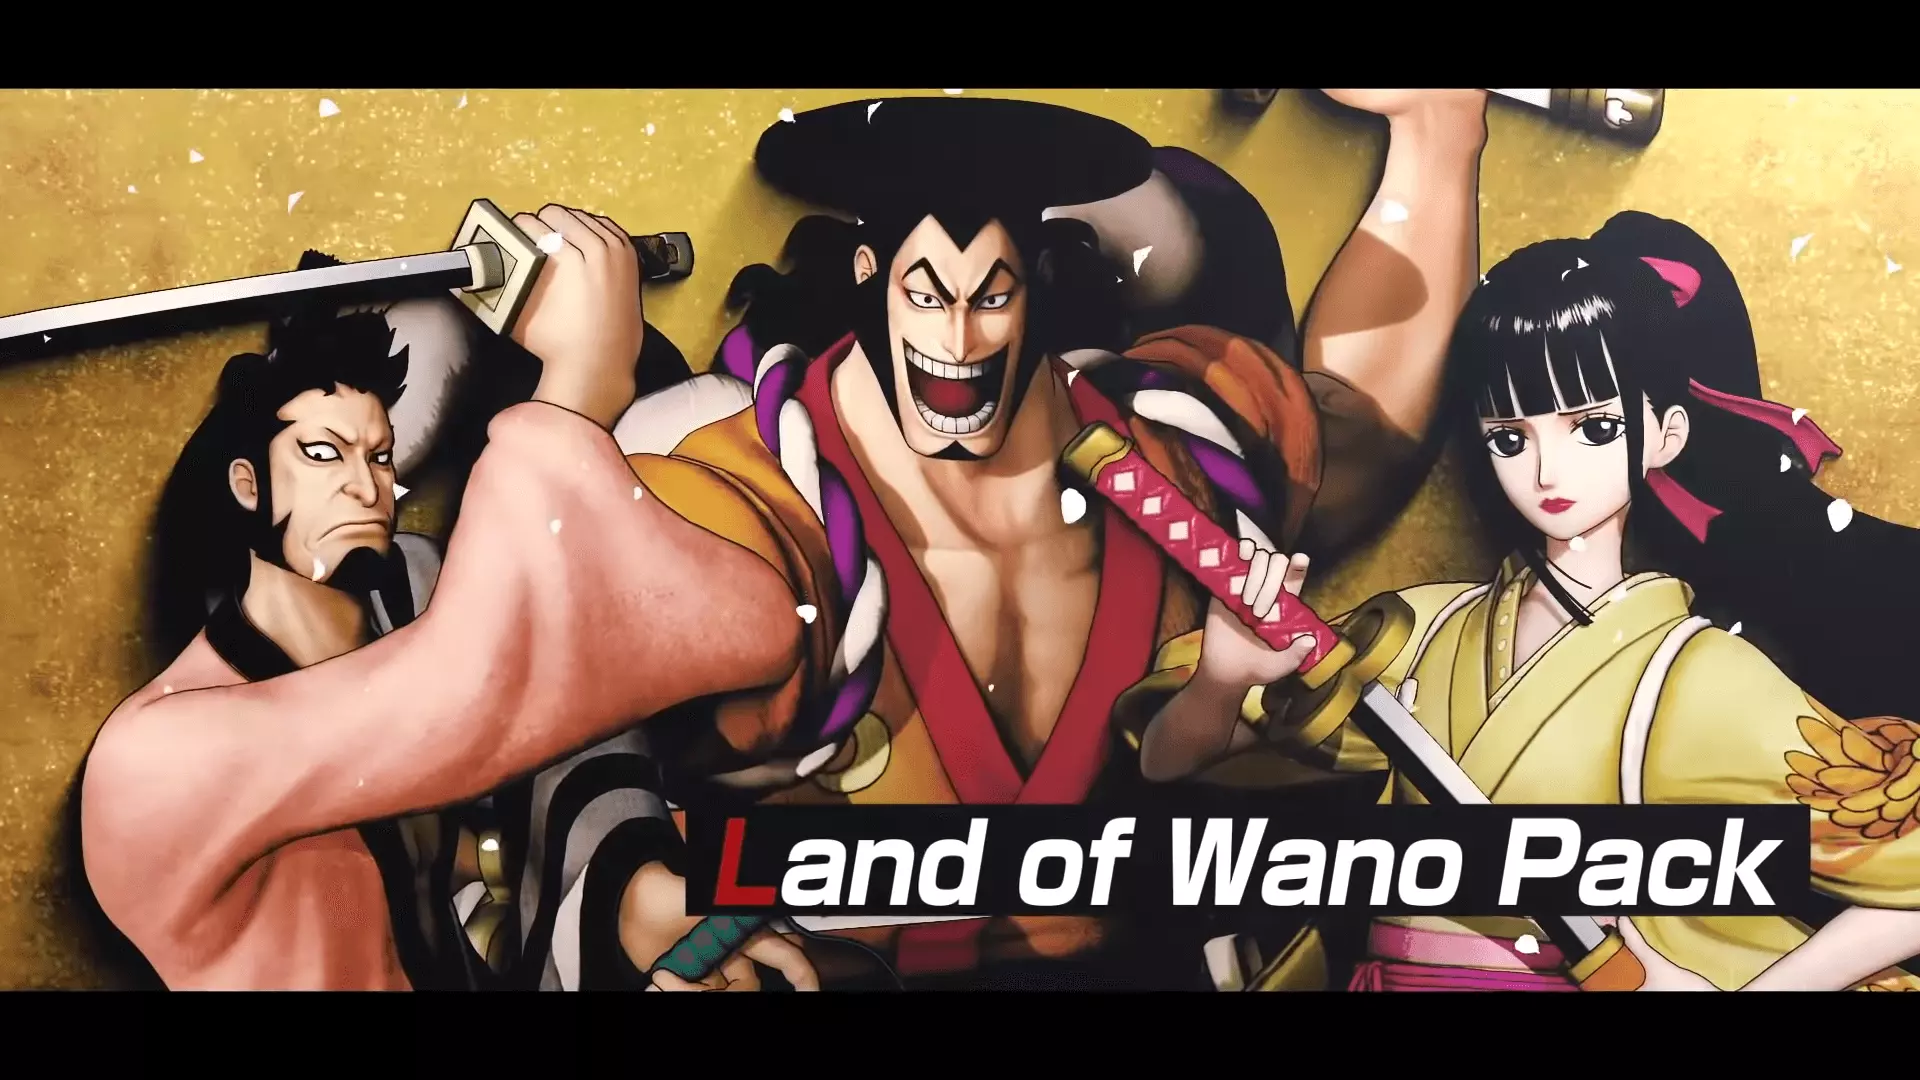 На этой неделе Bandai Namco выпустила третий набор персонажей для One Piece: Pirate Warriors 4, добавив в игру трех новых воинов как часть набора "Land of Wano Pack".